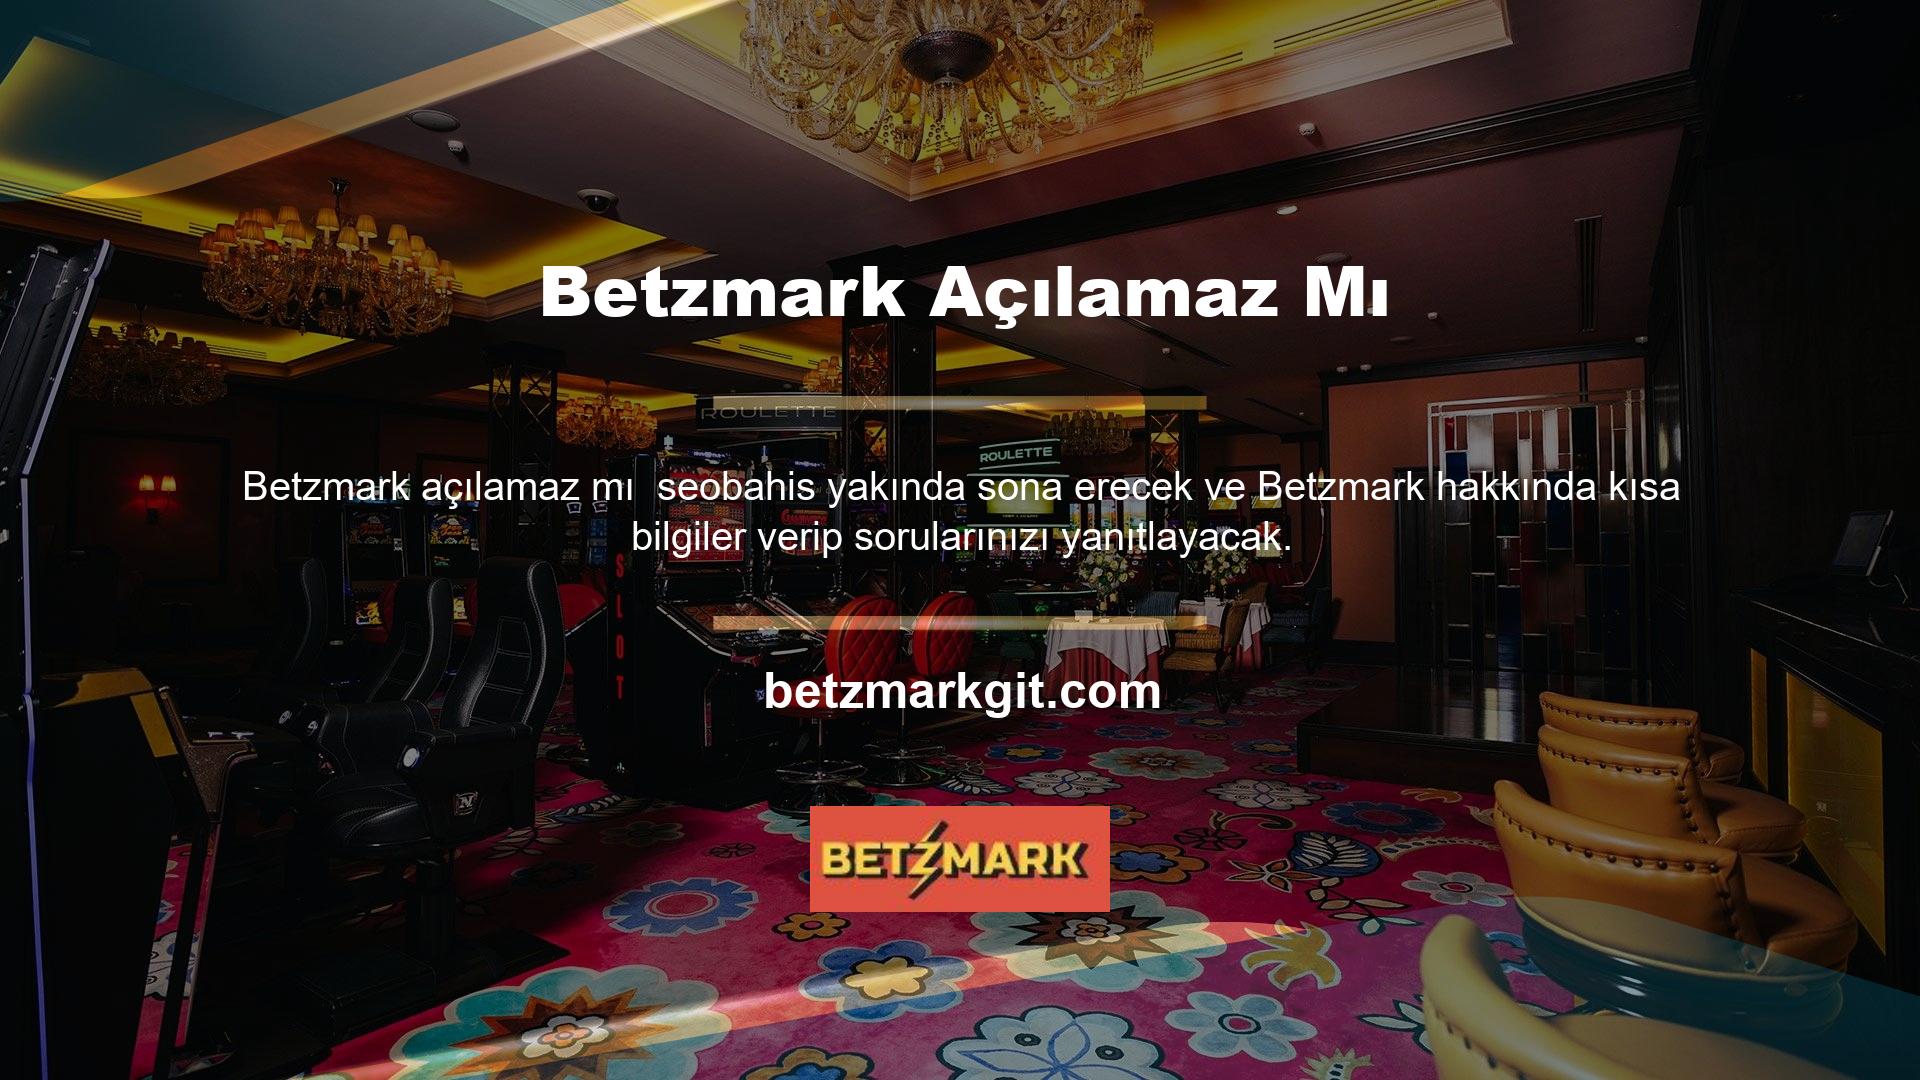 Güvenilir ve profesyonel bir bahis platformu olan Betzmark mevcuttur